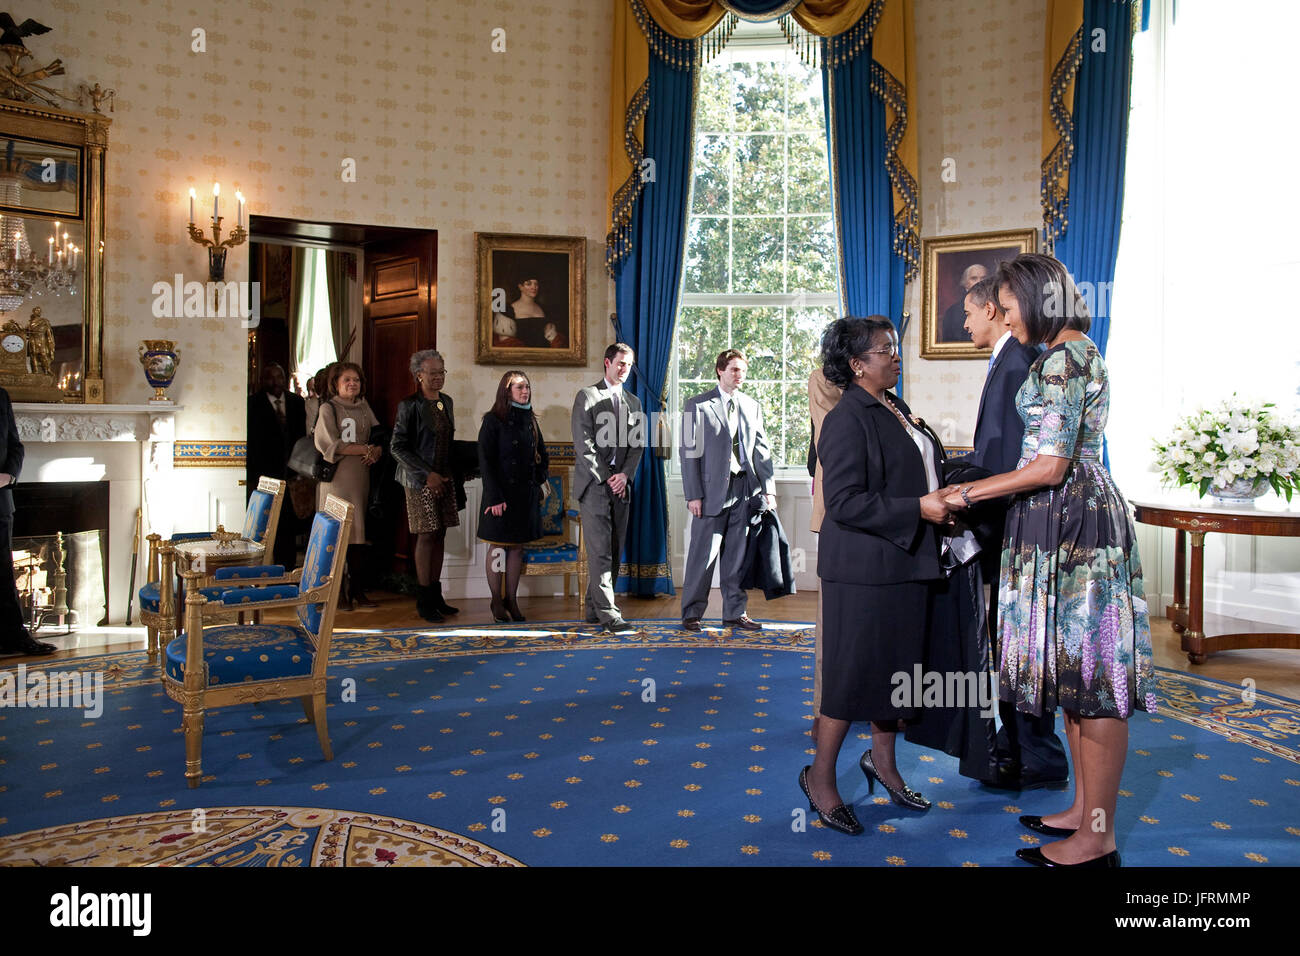 Le président Barack Obama et Première Dame Michelle Obama bienvenue aux visiteurs de la Maison blanche dans la salle bleue. 1/21/09. Photo Officiel de la Maison Blanche par Pete Souza Banque D'Images